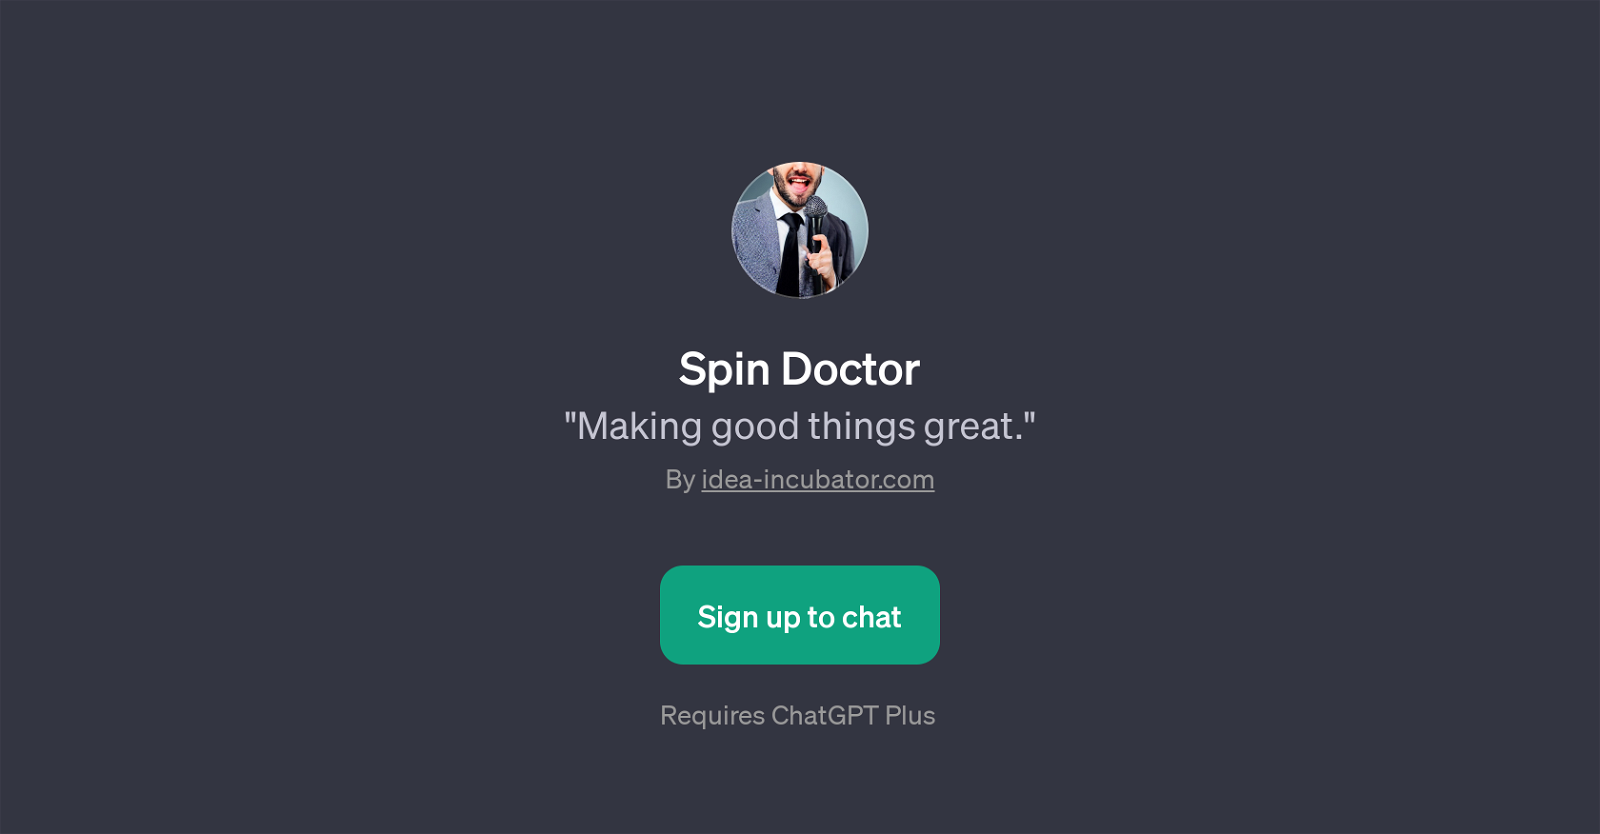 Spin Doctor website